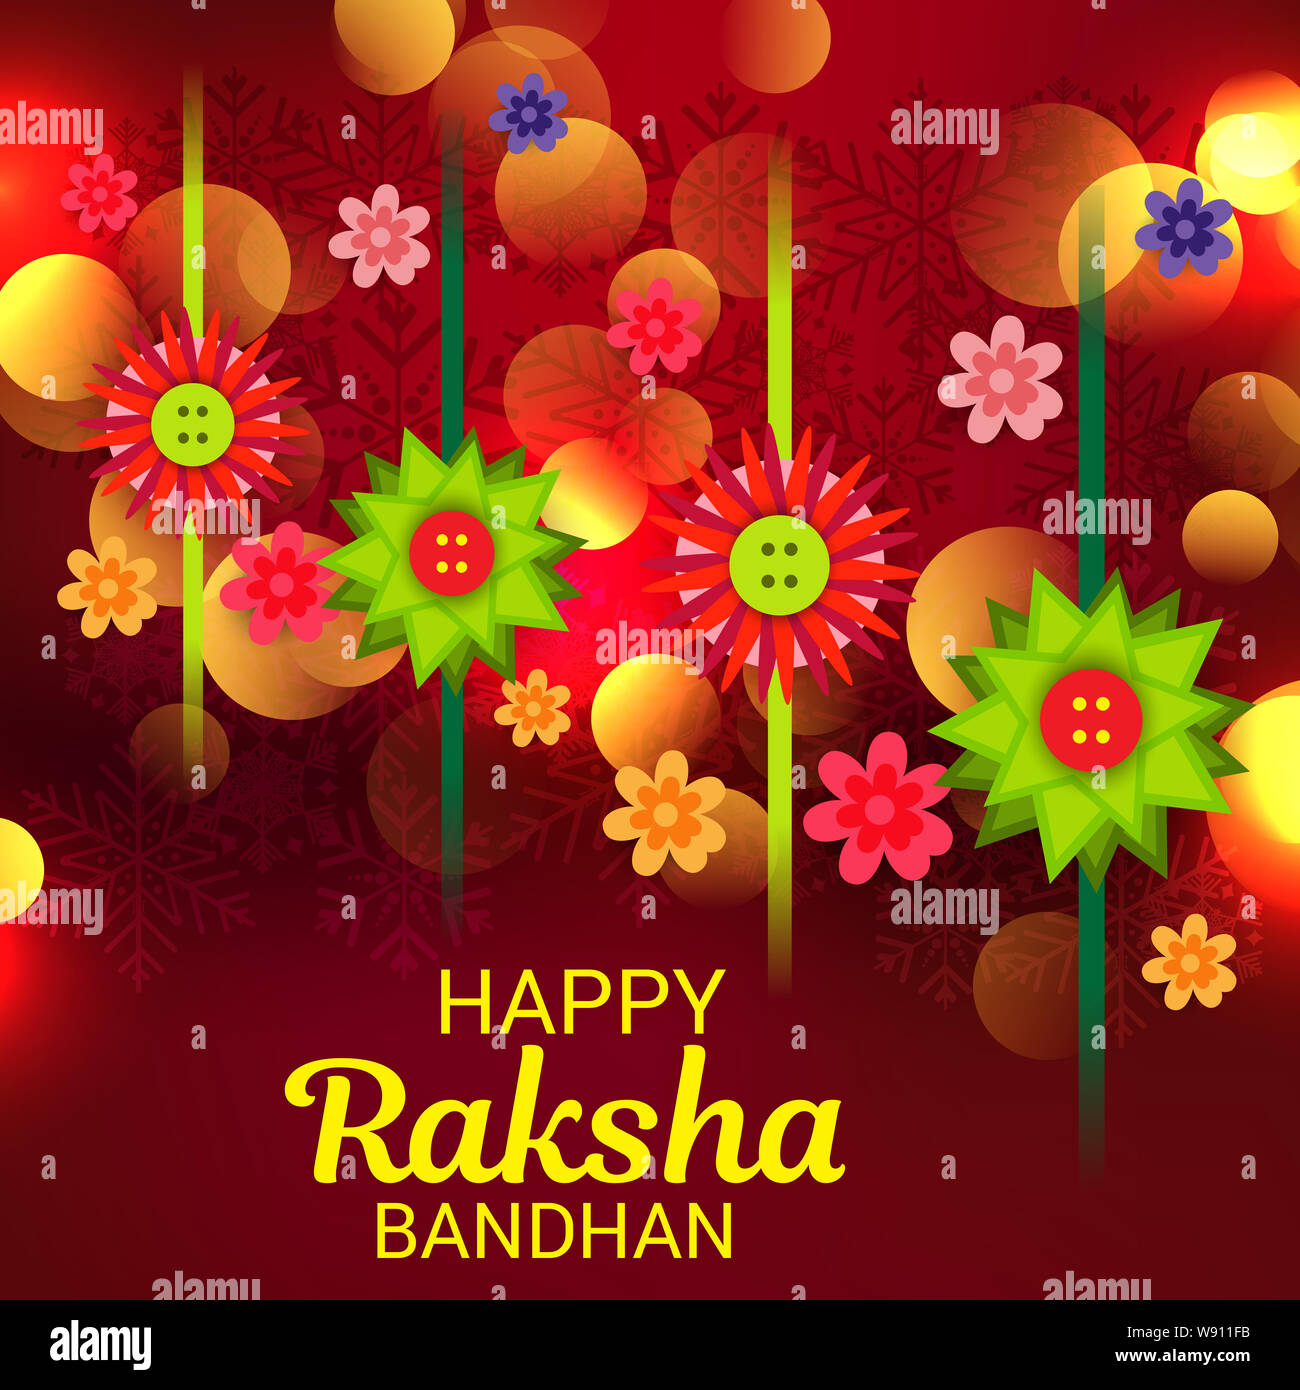 Vector illustration of a Background for Happy Raksha Bandhan ...